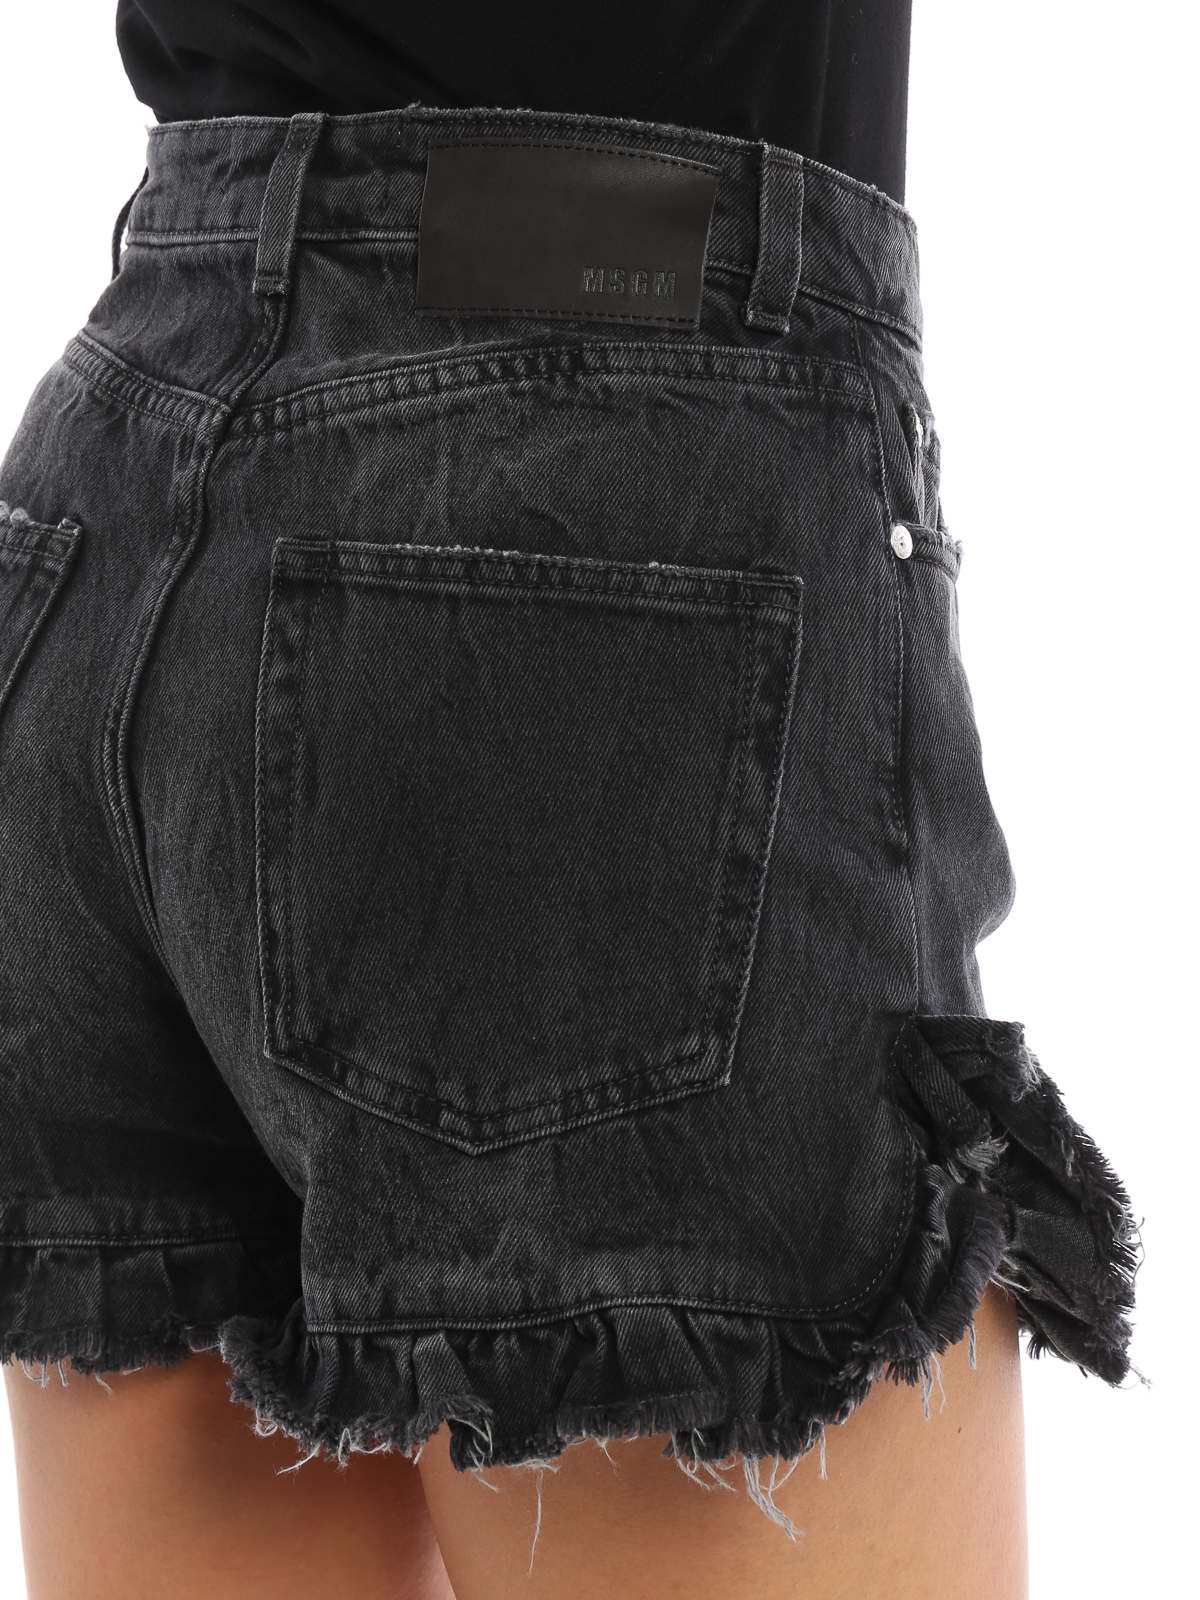 ruffled jean shorts